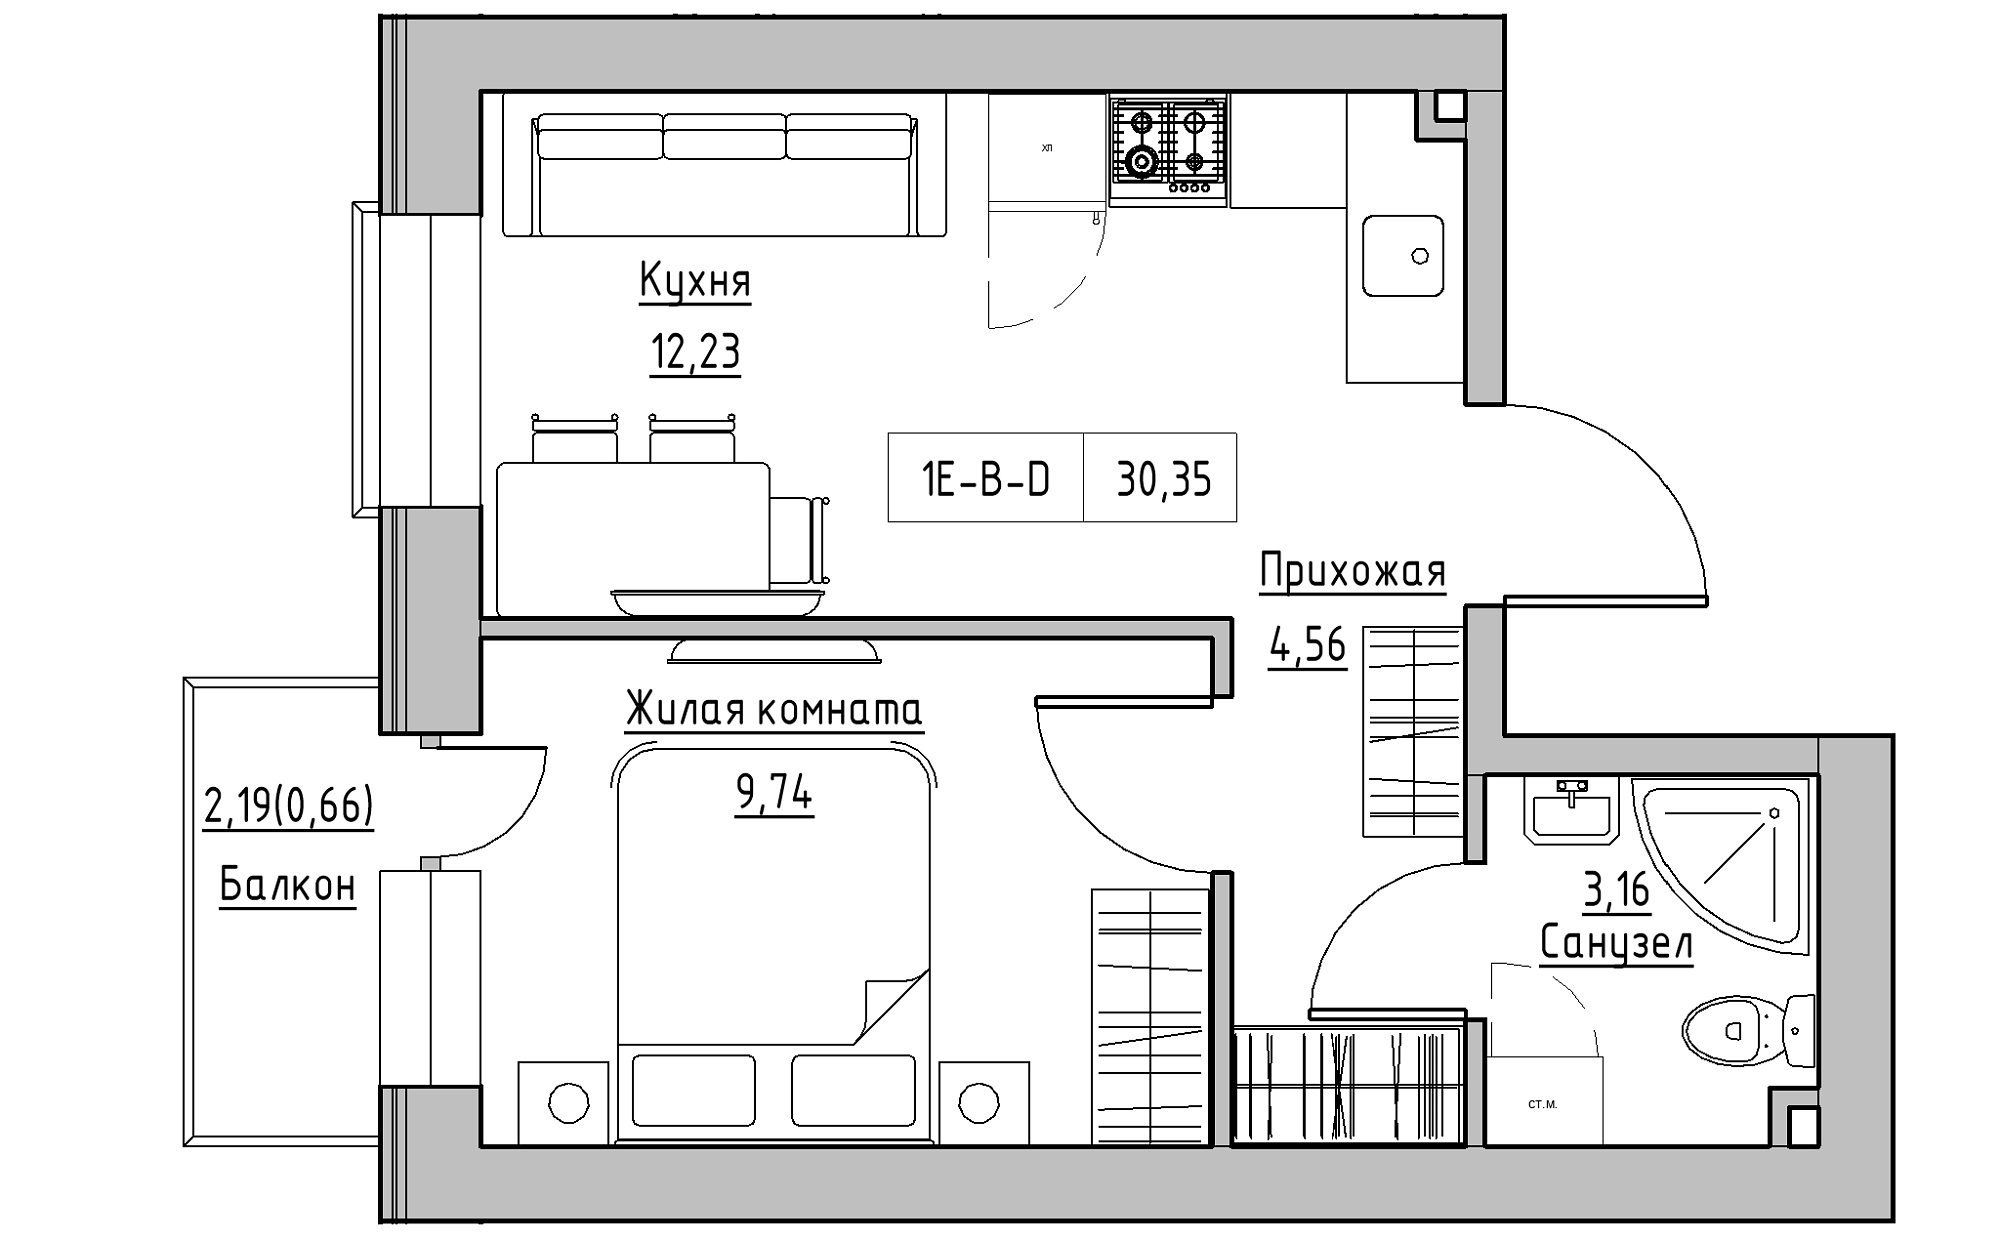 Планування 1-к квартира площею 30.35м2, KS-022-04/0012.